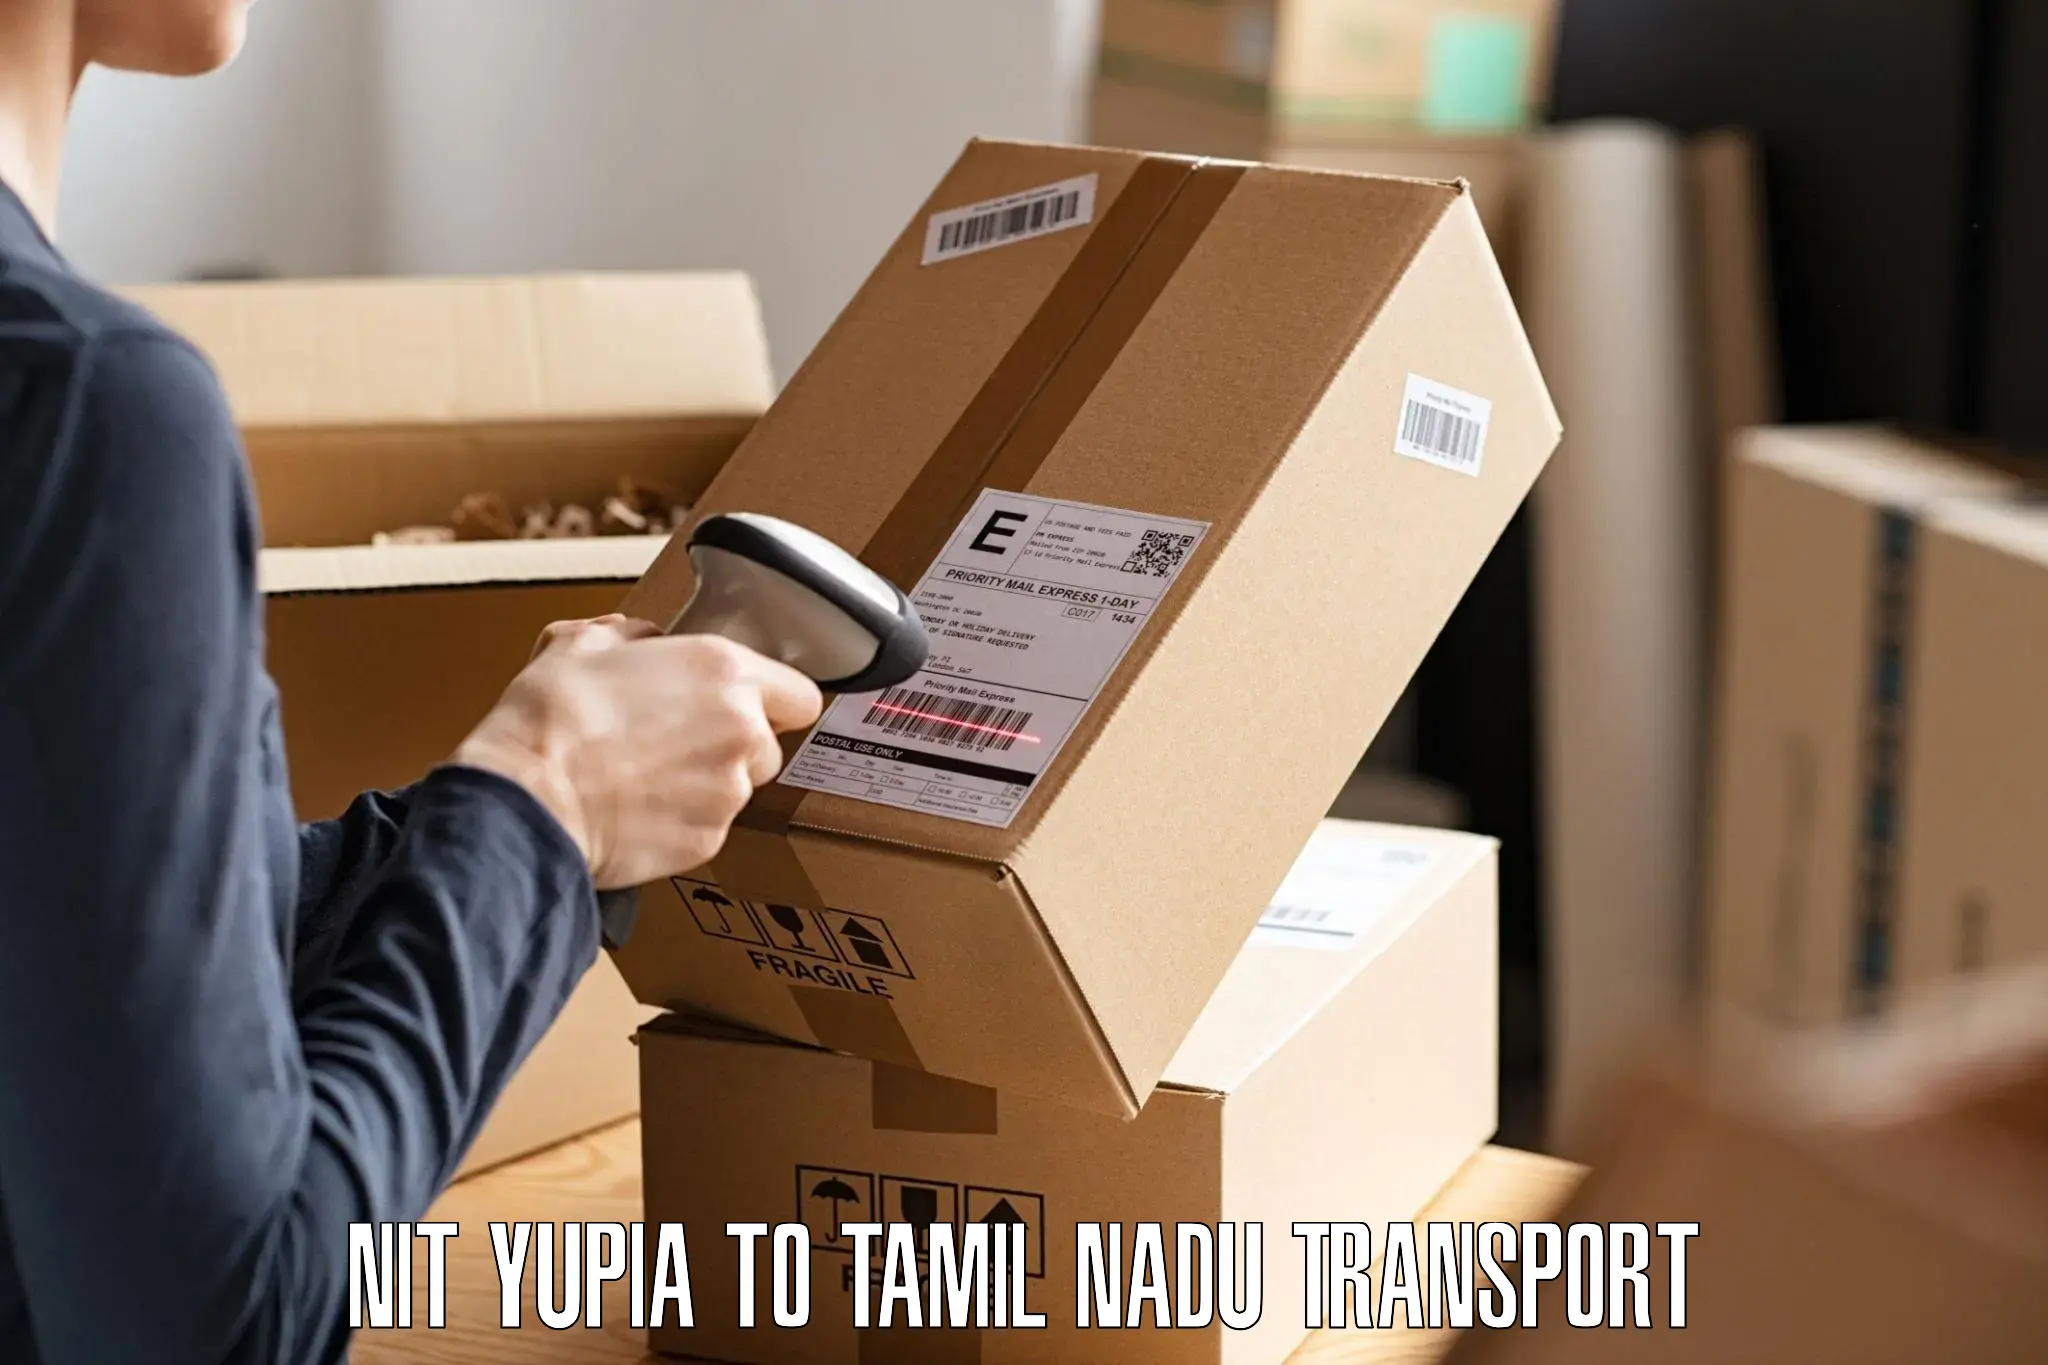 Two wheeler parcel service NIT Yupia to Chennai